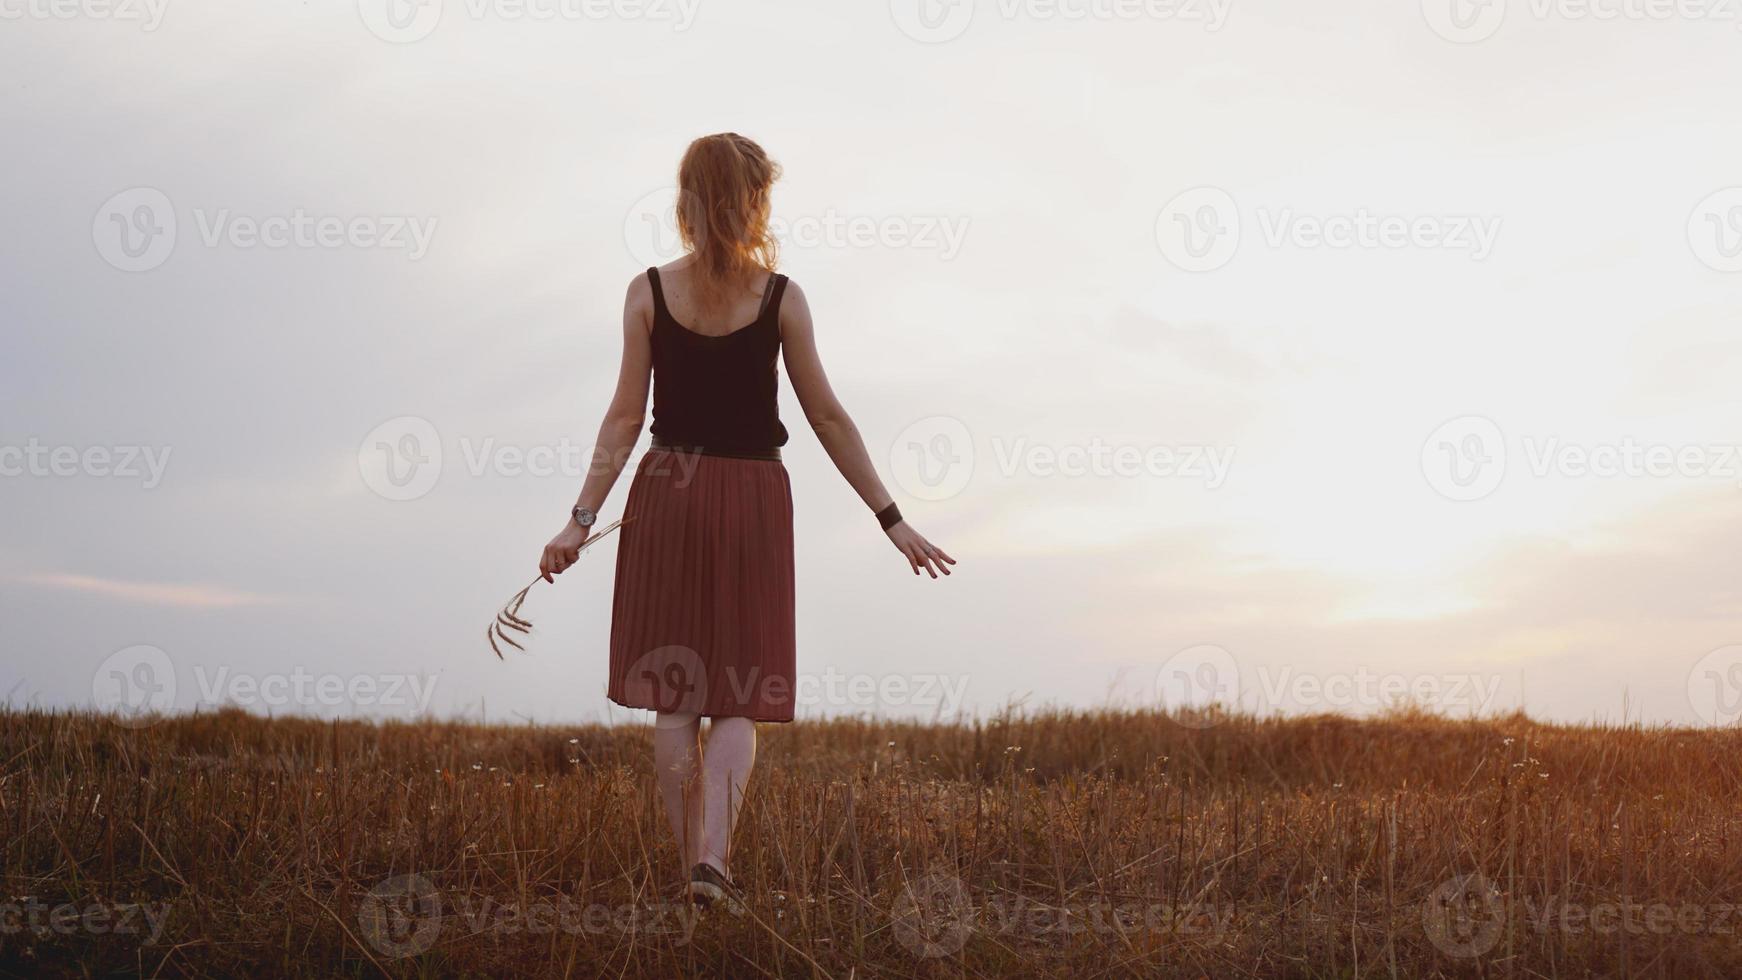 jonge vrouw die geniet van de natuur en zonlicht in het stroveld foto